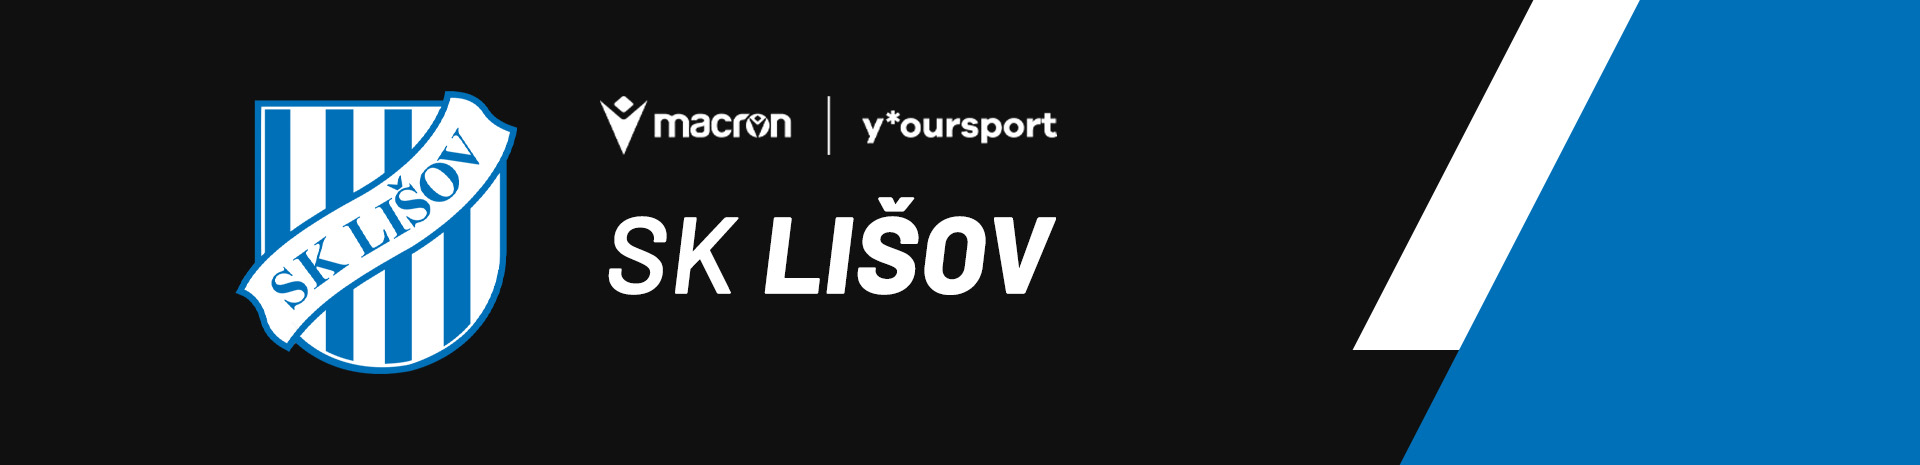 SK Lišov desktop